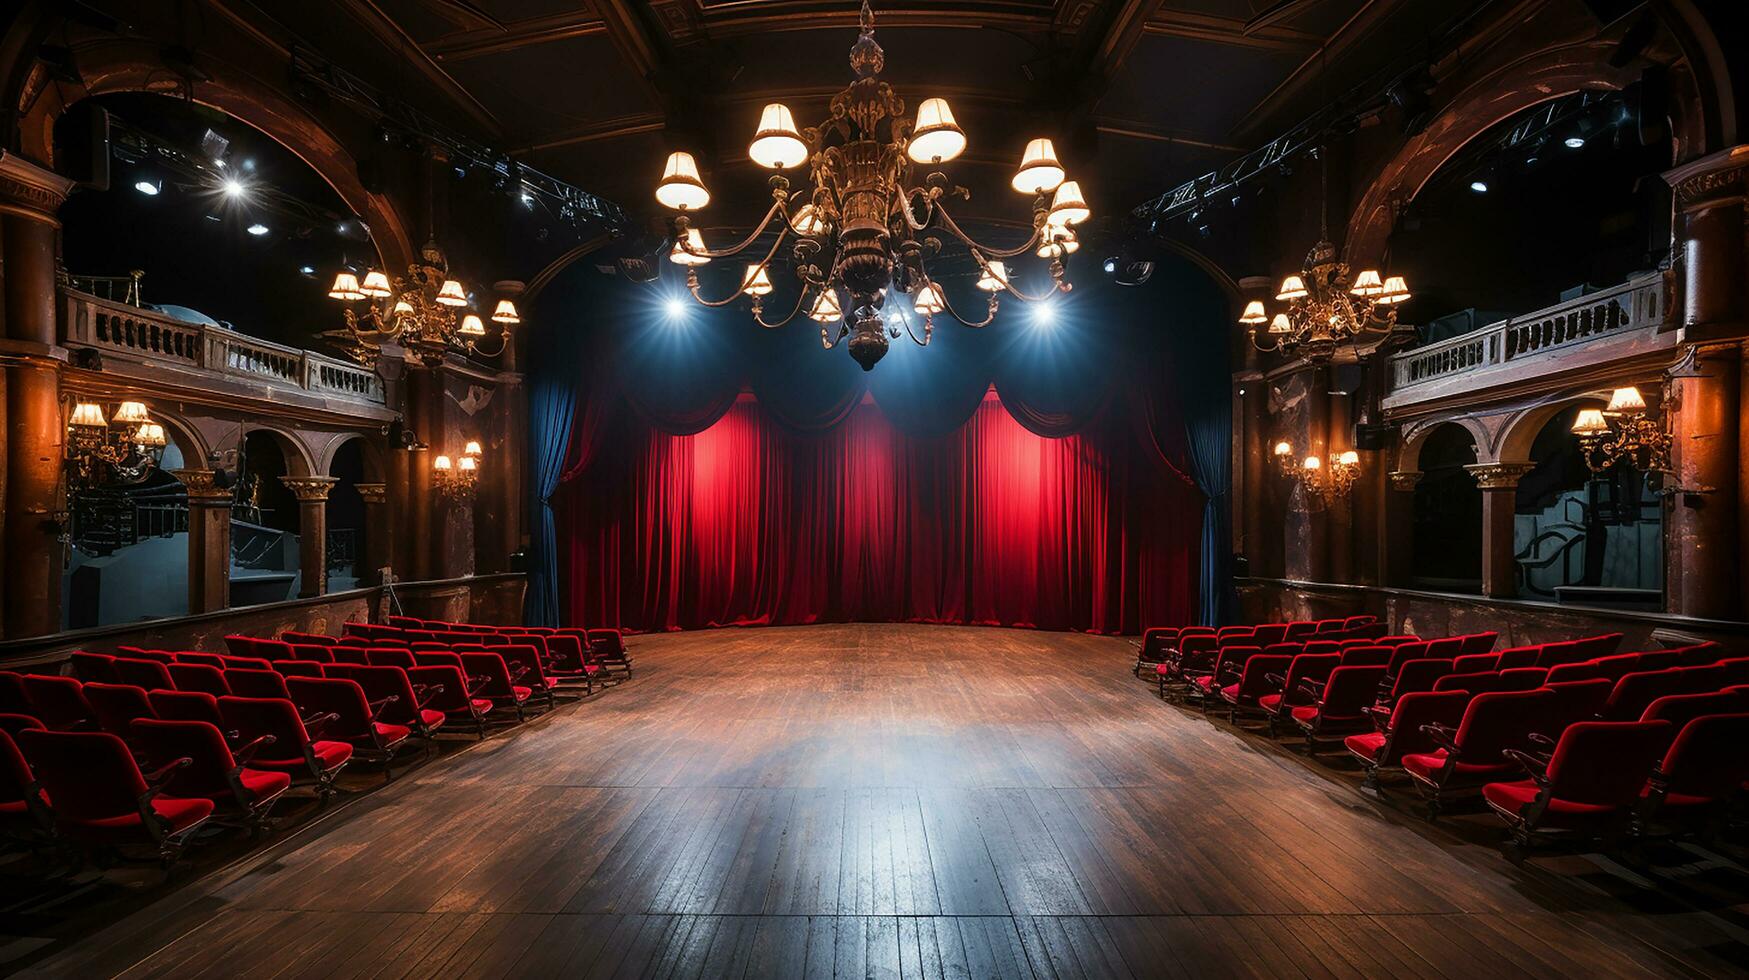 teatro escenario, con rojo cortina, de madera piso, sillas y Encendiendo ai generativo foto